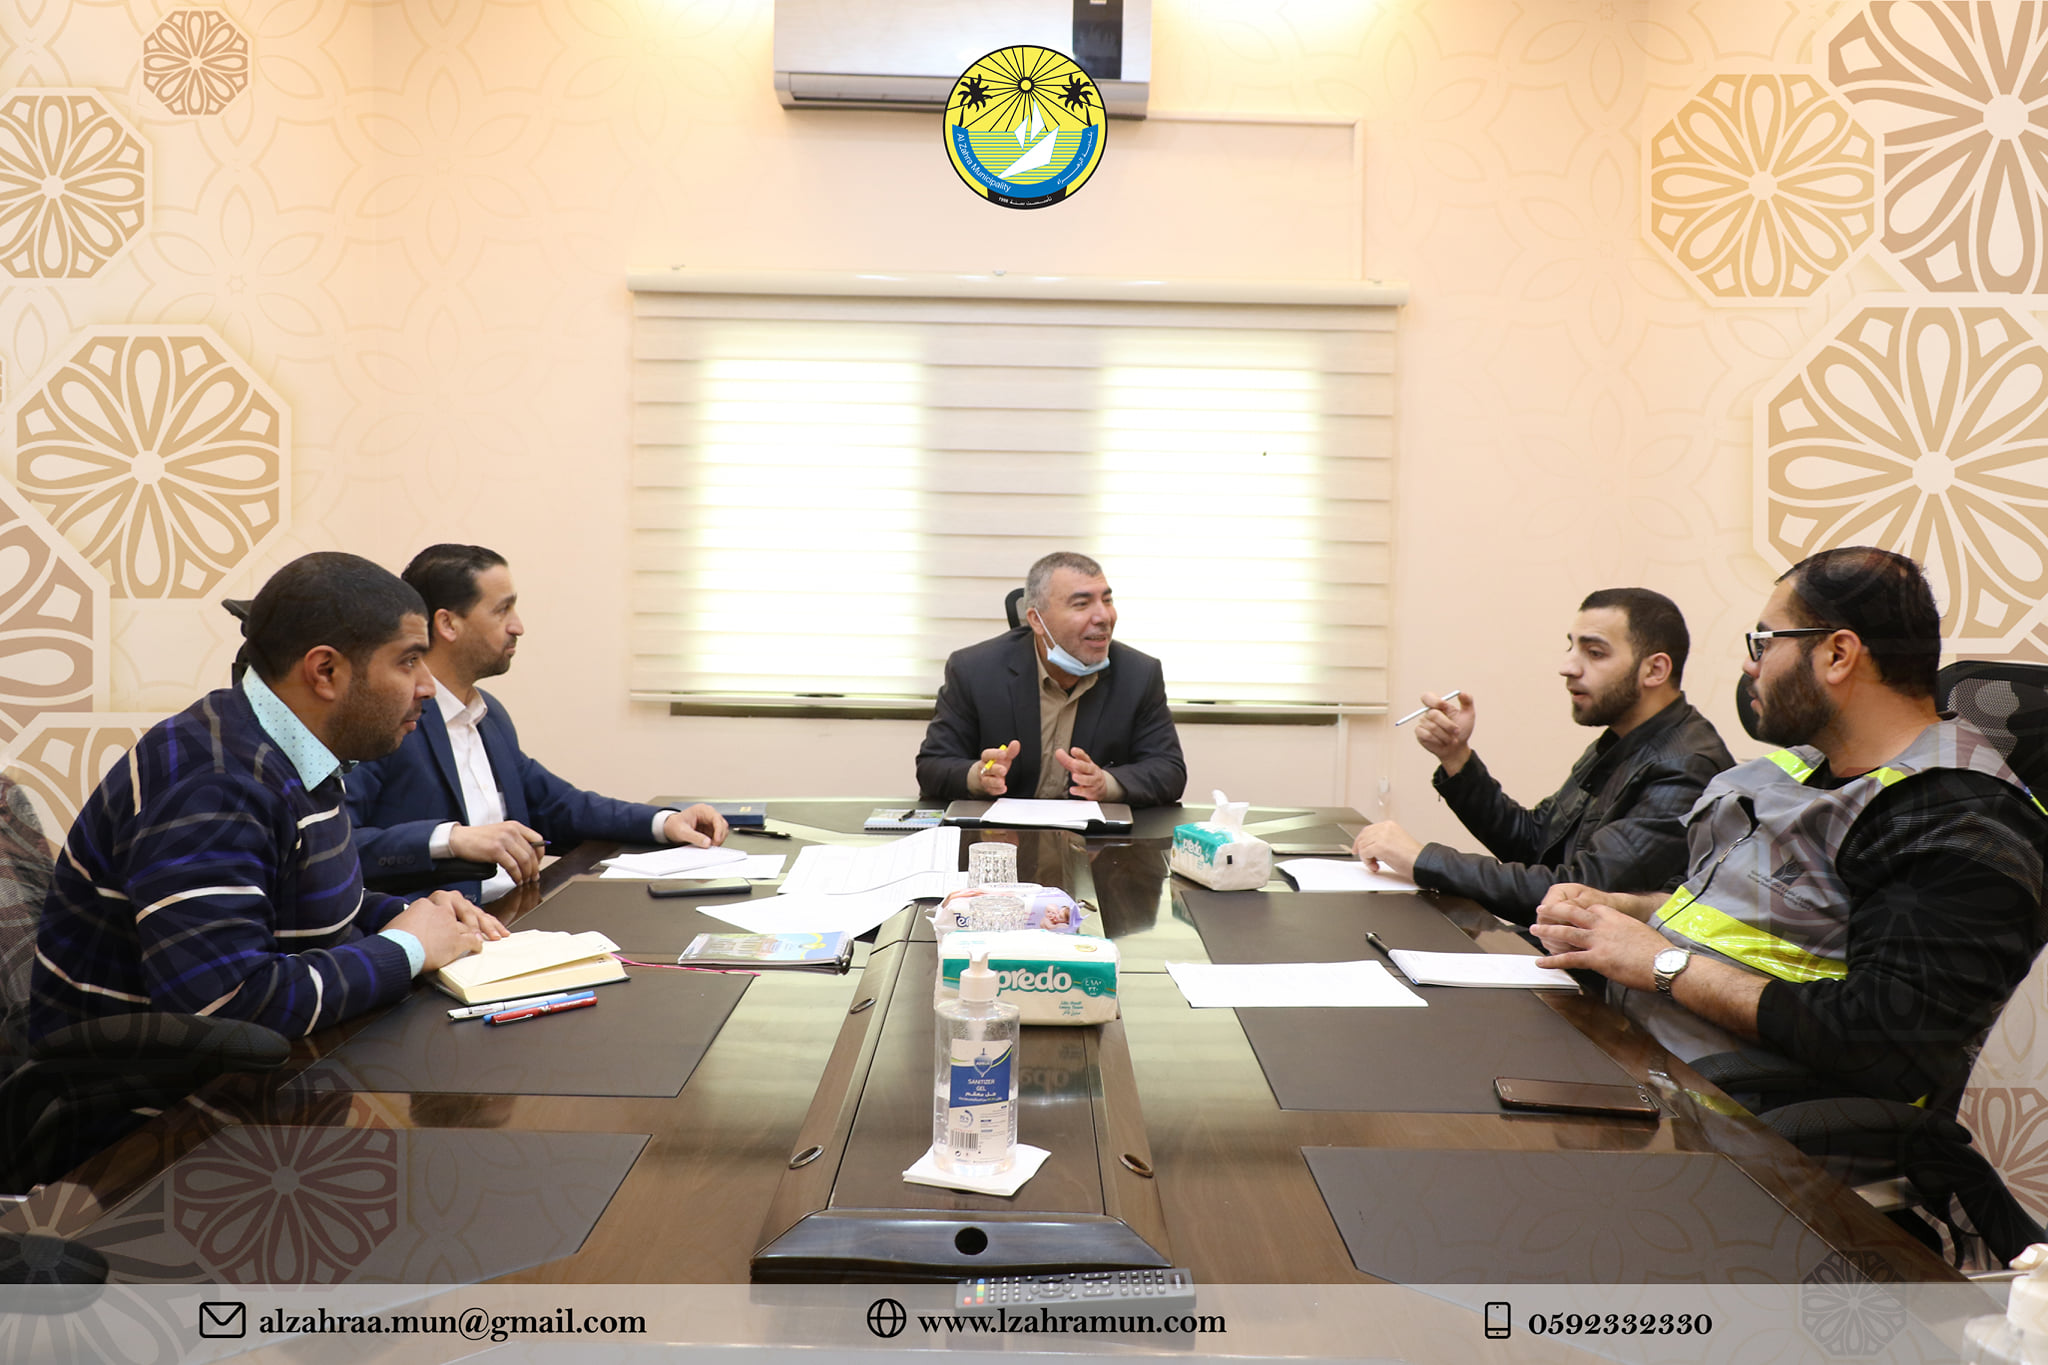 قسم الشؤون الإدارية والمالية يجتمع مع الاستشاري د. عماد أبو شعبان